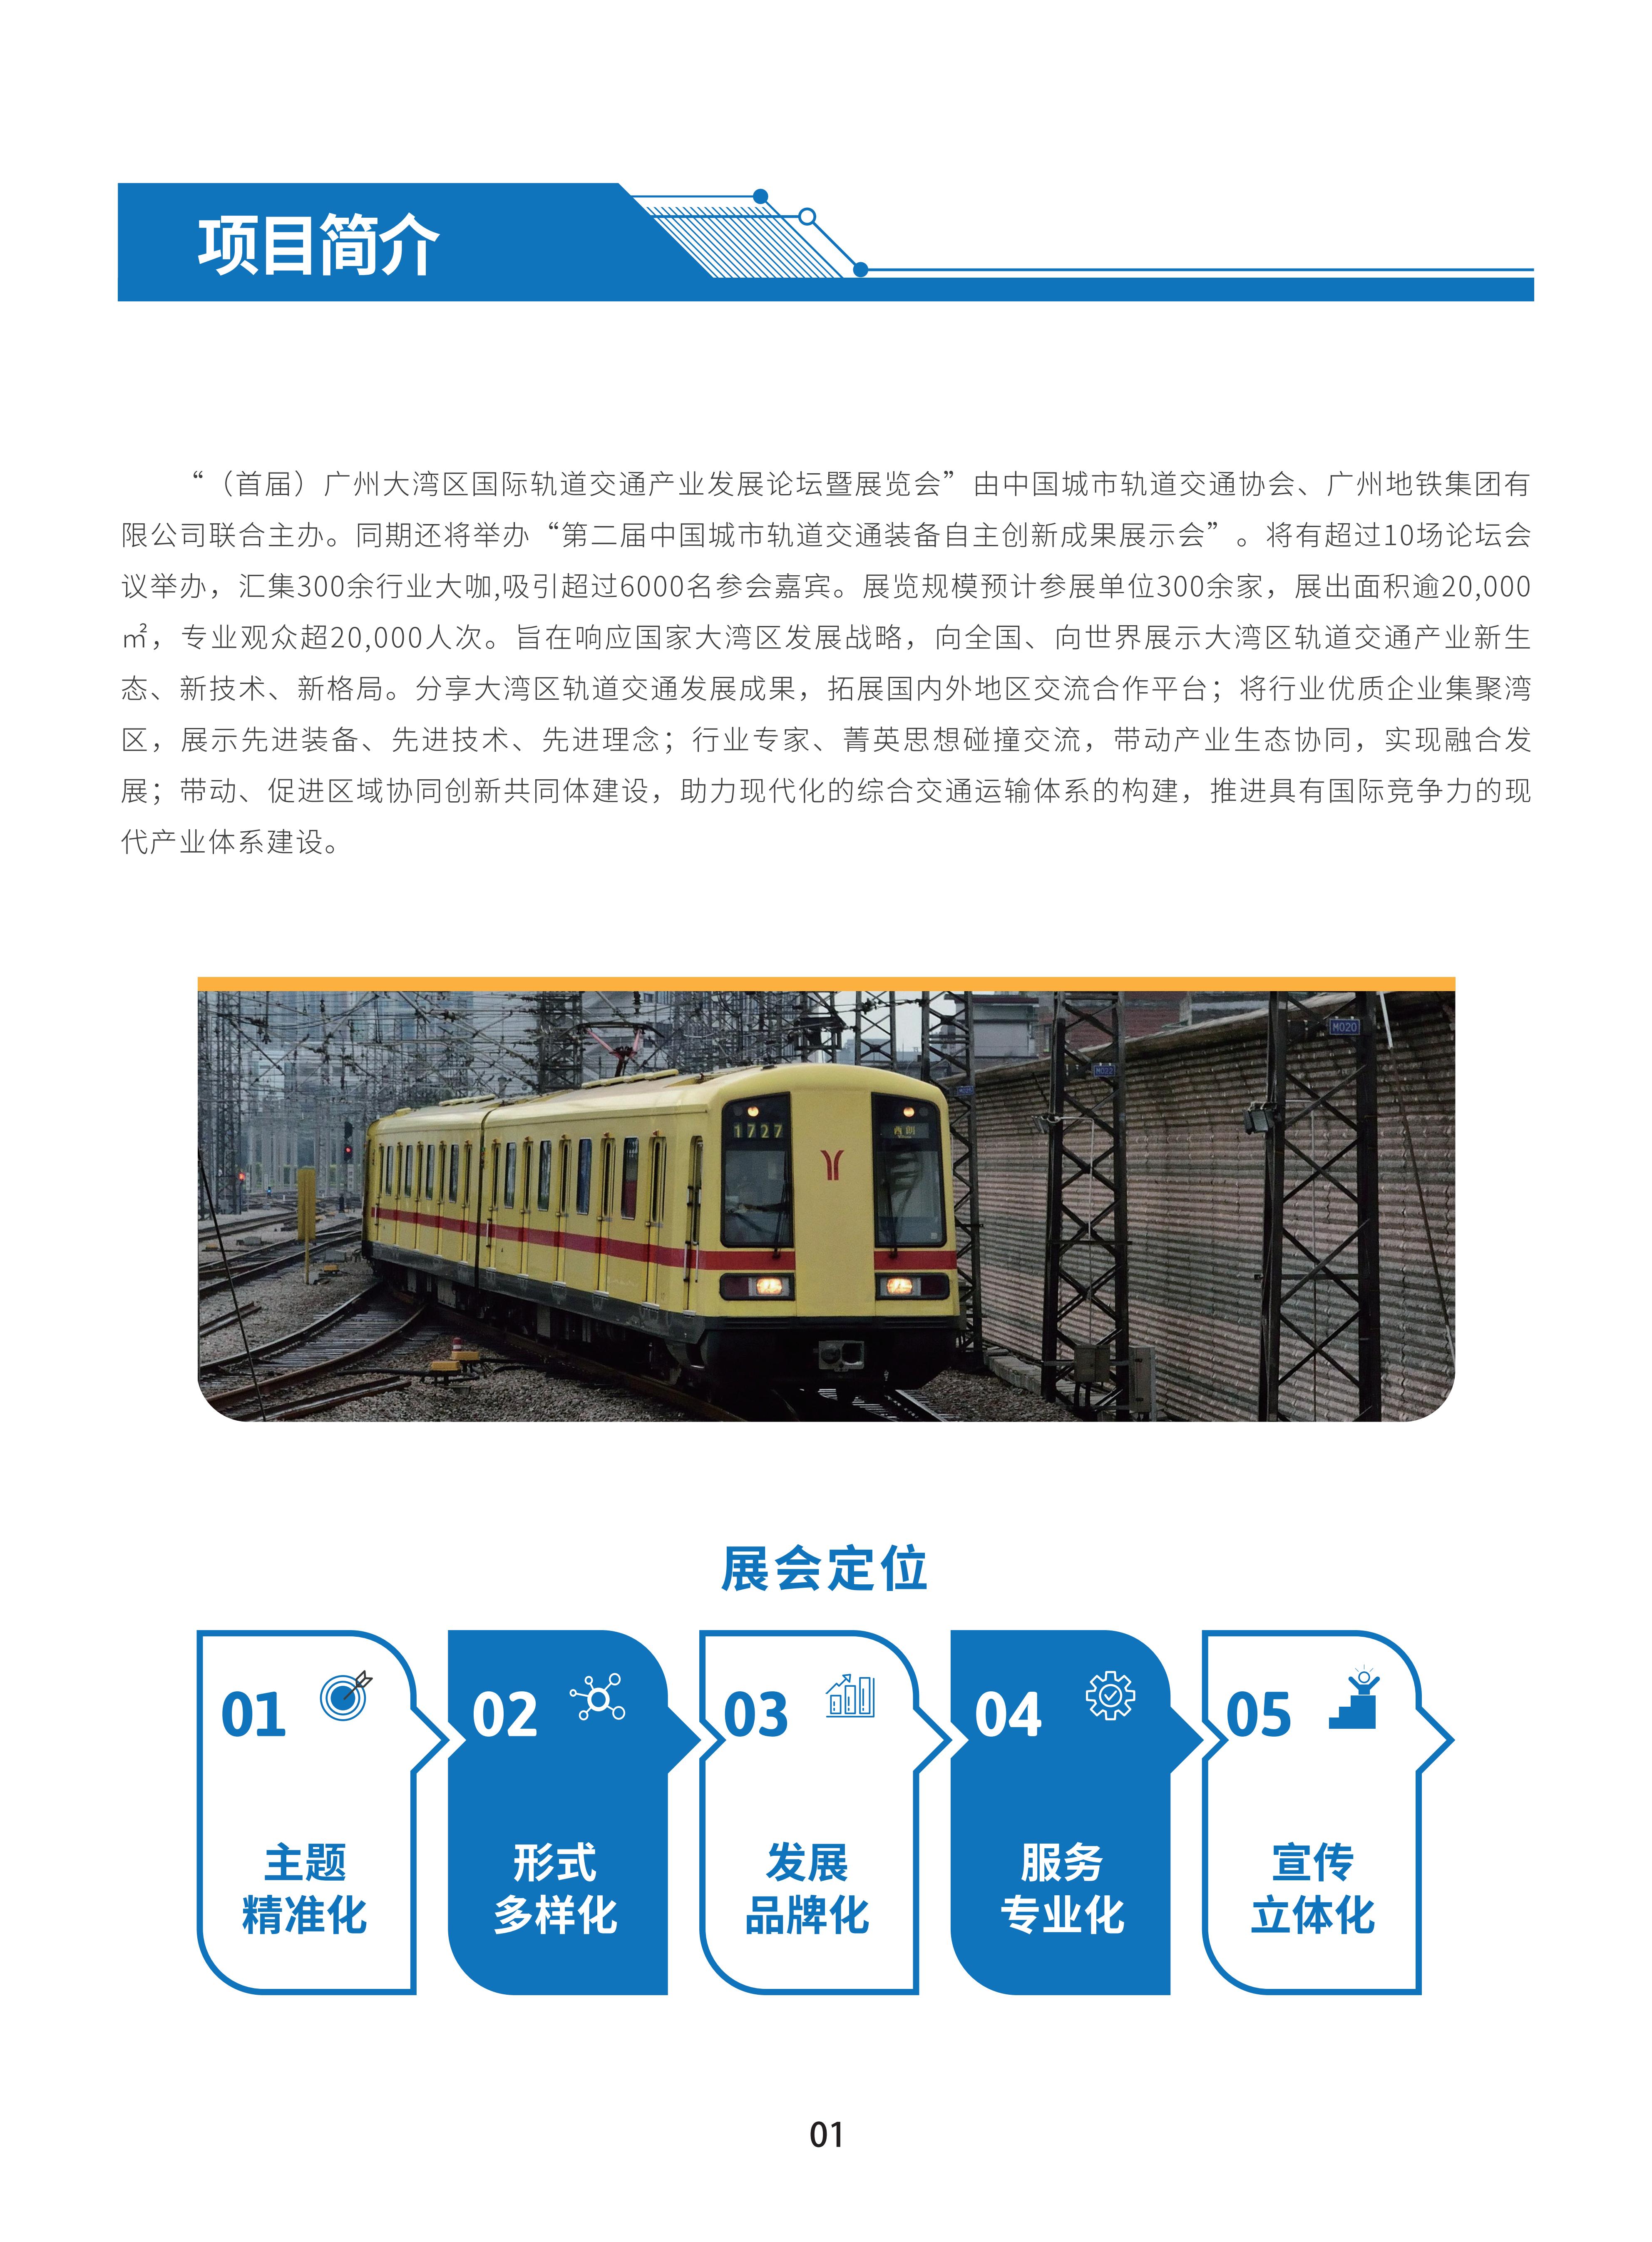 首届广州国际轨道交通展招商手册-20230306_03.jpg